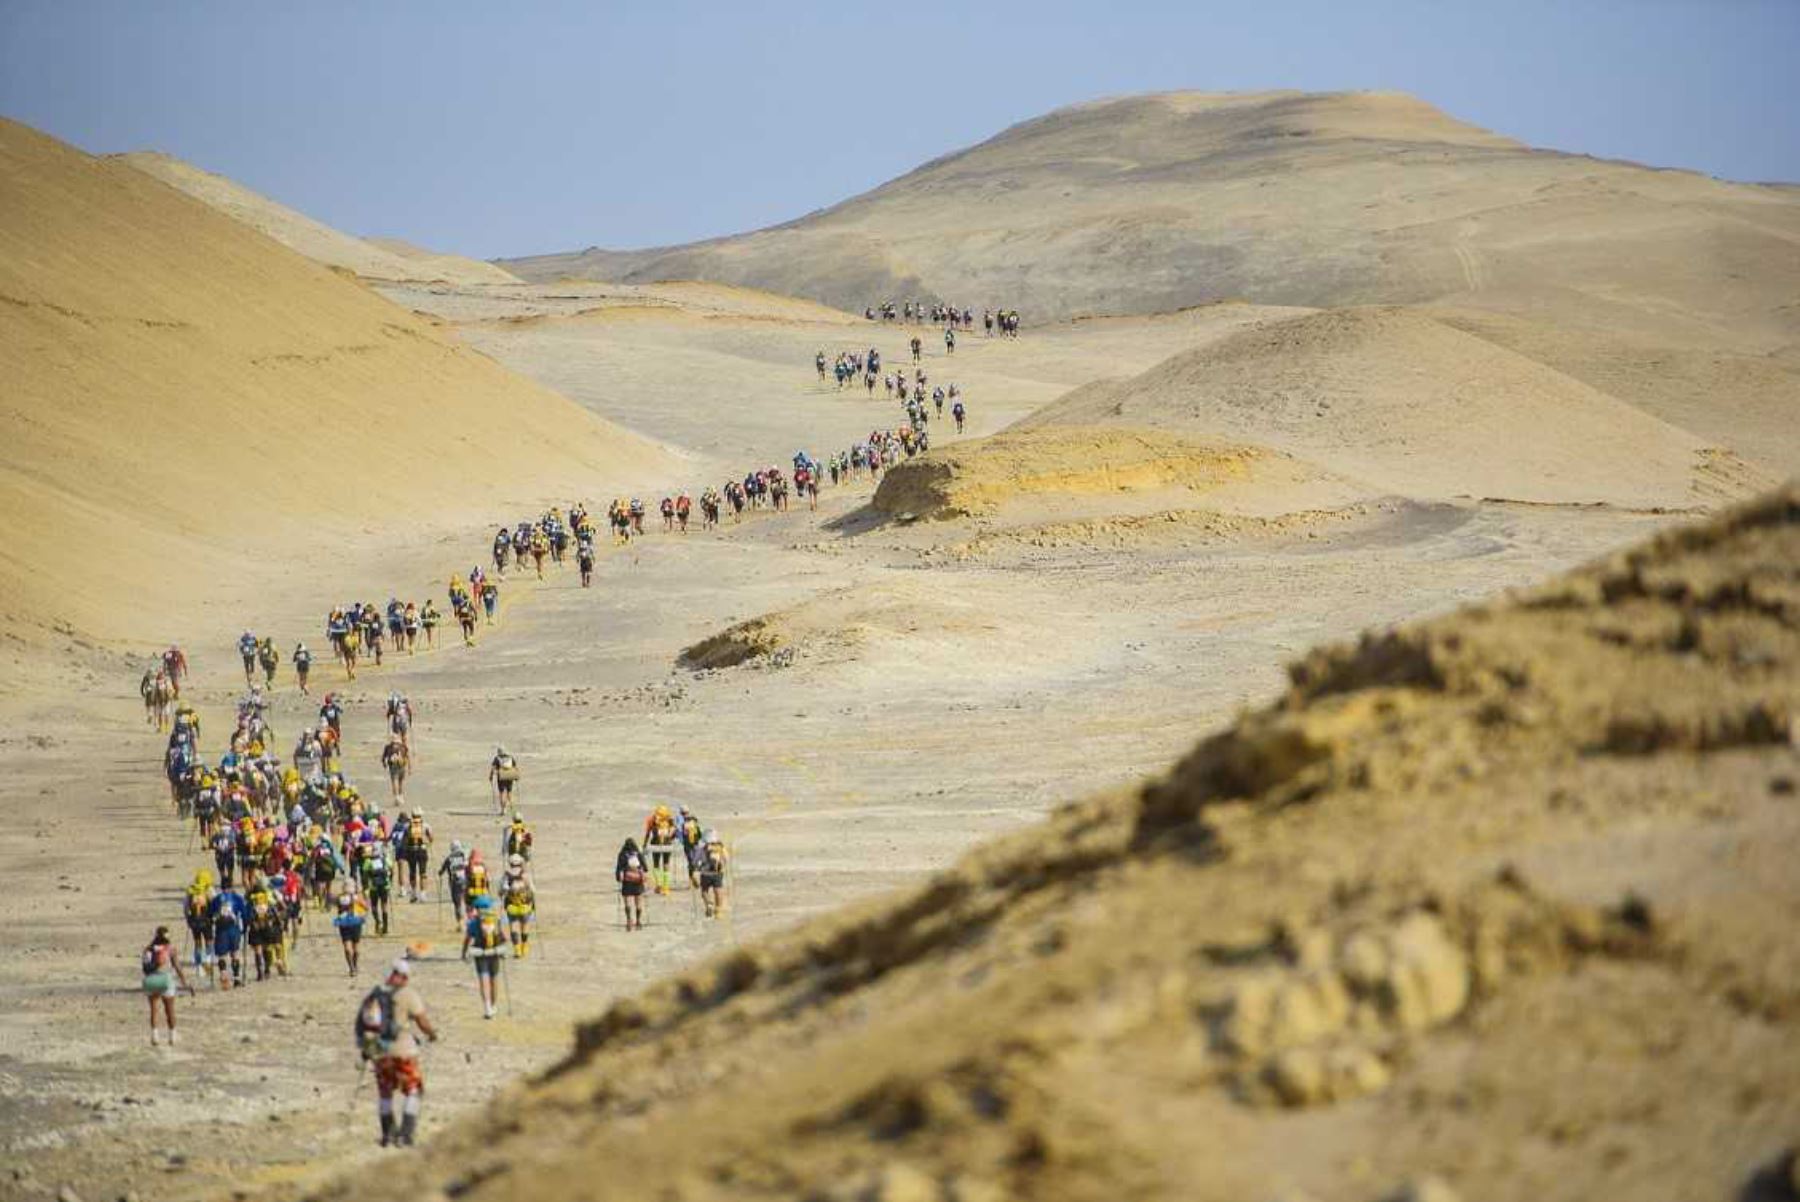 El Perú será, por segundo año consecutivo, el escenario de la Half Marathon Des Sables, considerada como una de las competencias más extremas del mundo, anunció el ministro de Comercio Exterior y Turismo, Roger Valencia.